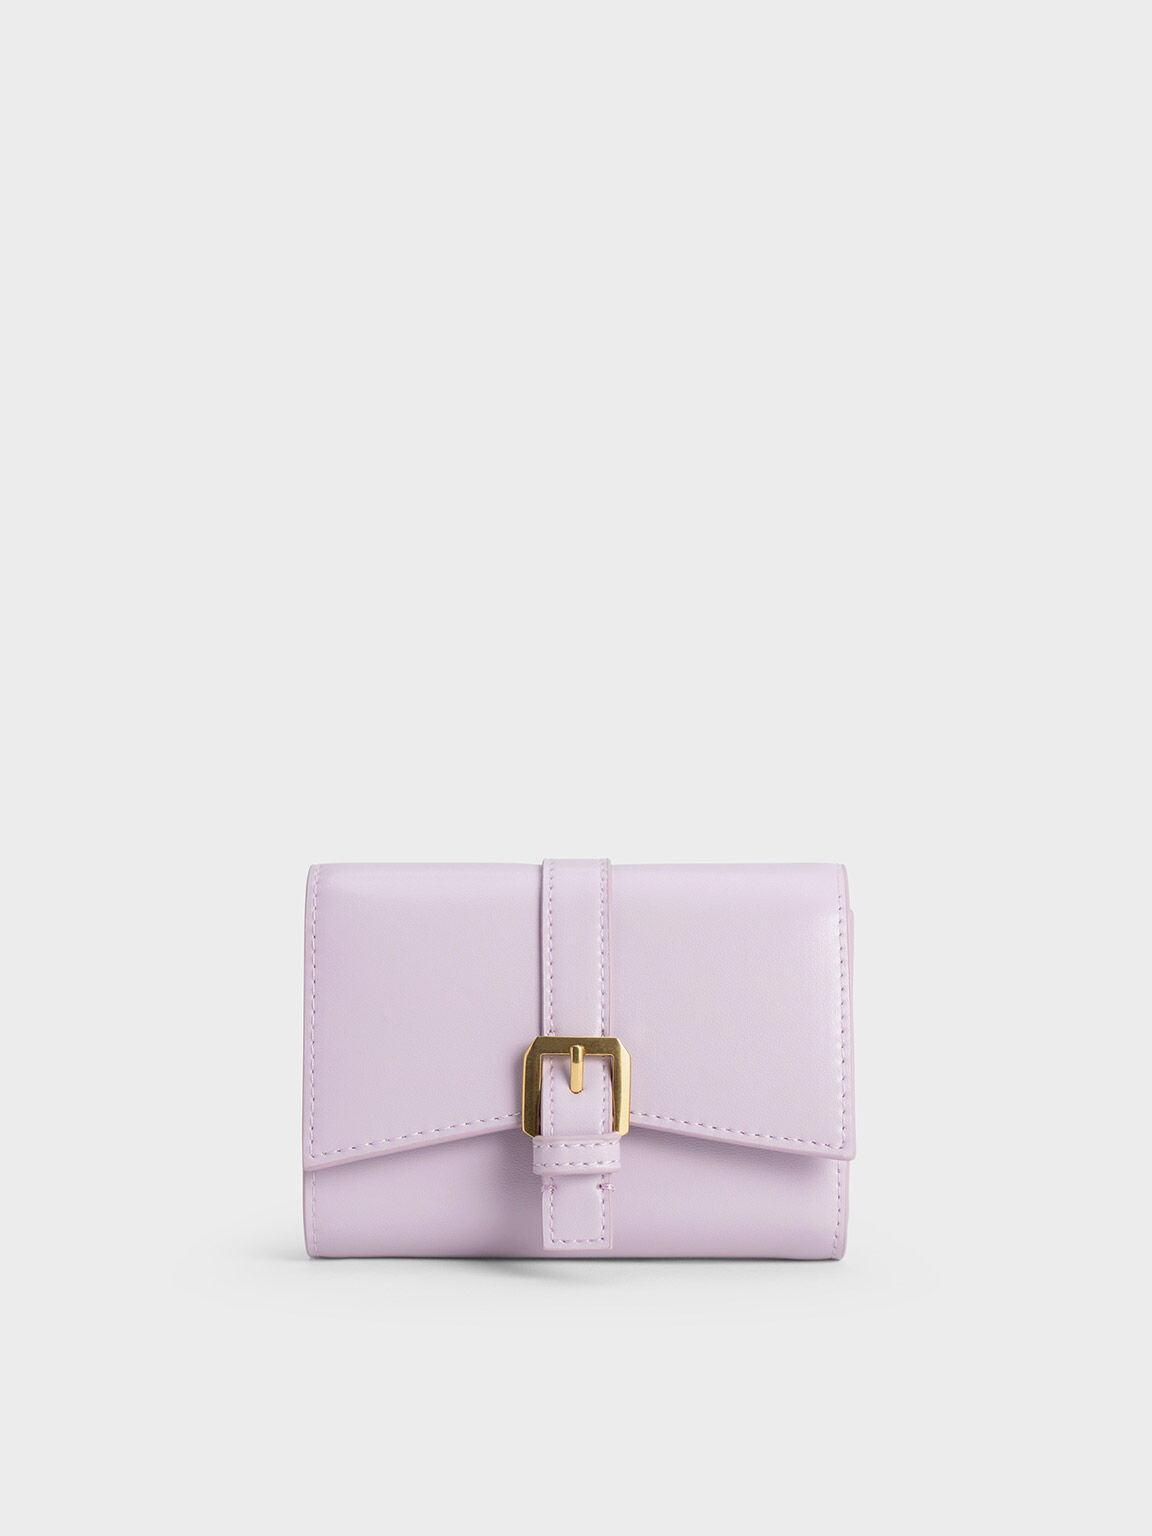 Annelise Belted Wallet, Lilac, hi-res